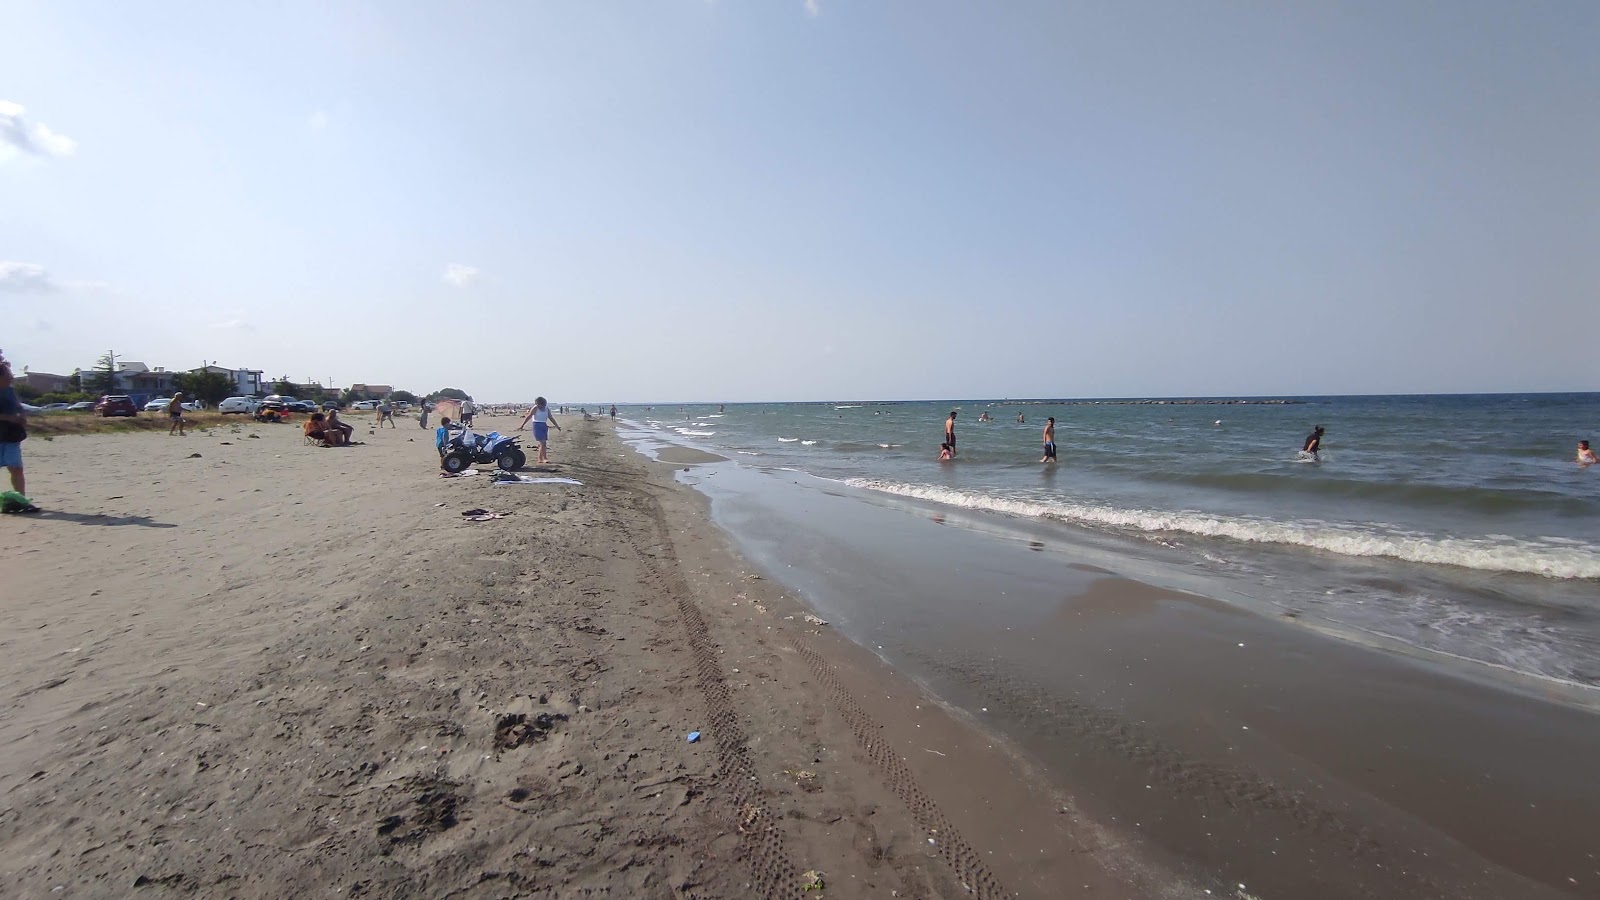 Catalcam Sahil'in fotoğrafı gri kum yüzey ile